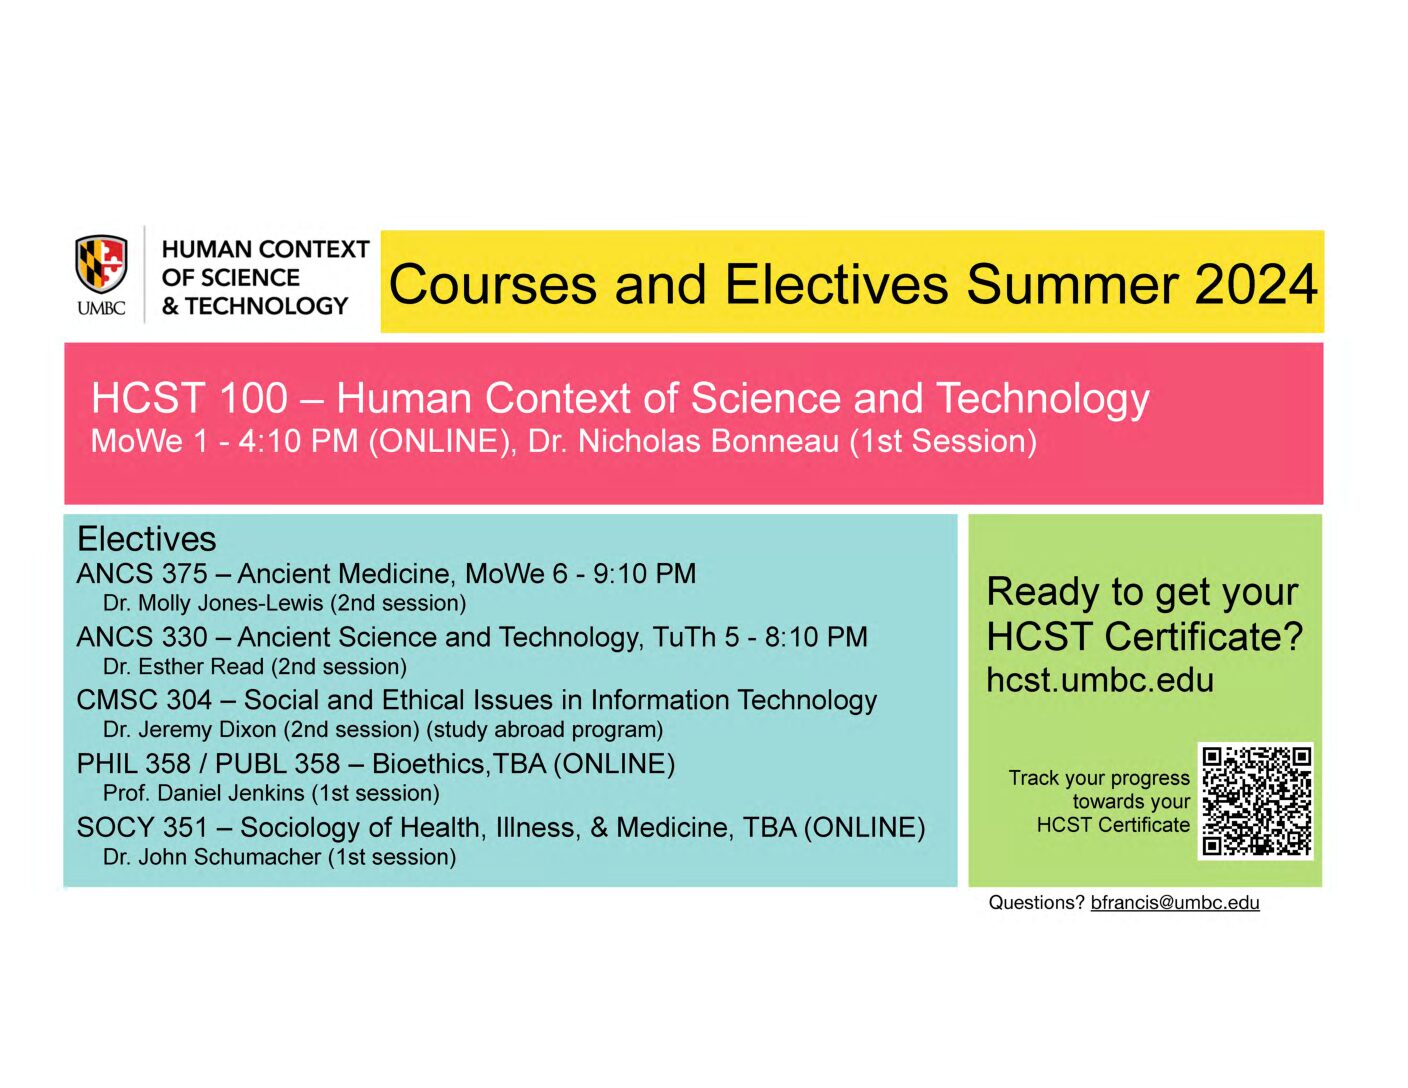 HCST Summer Courses